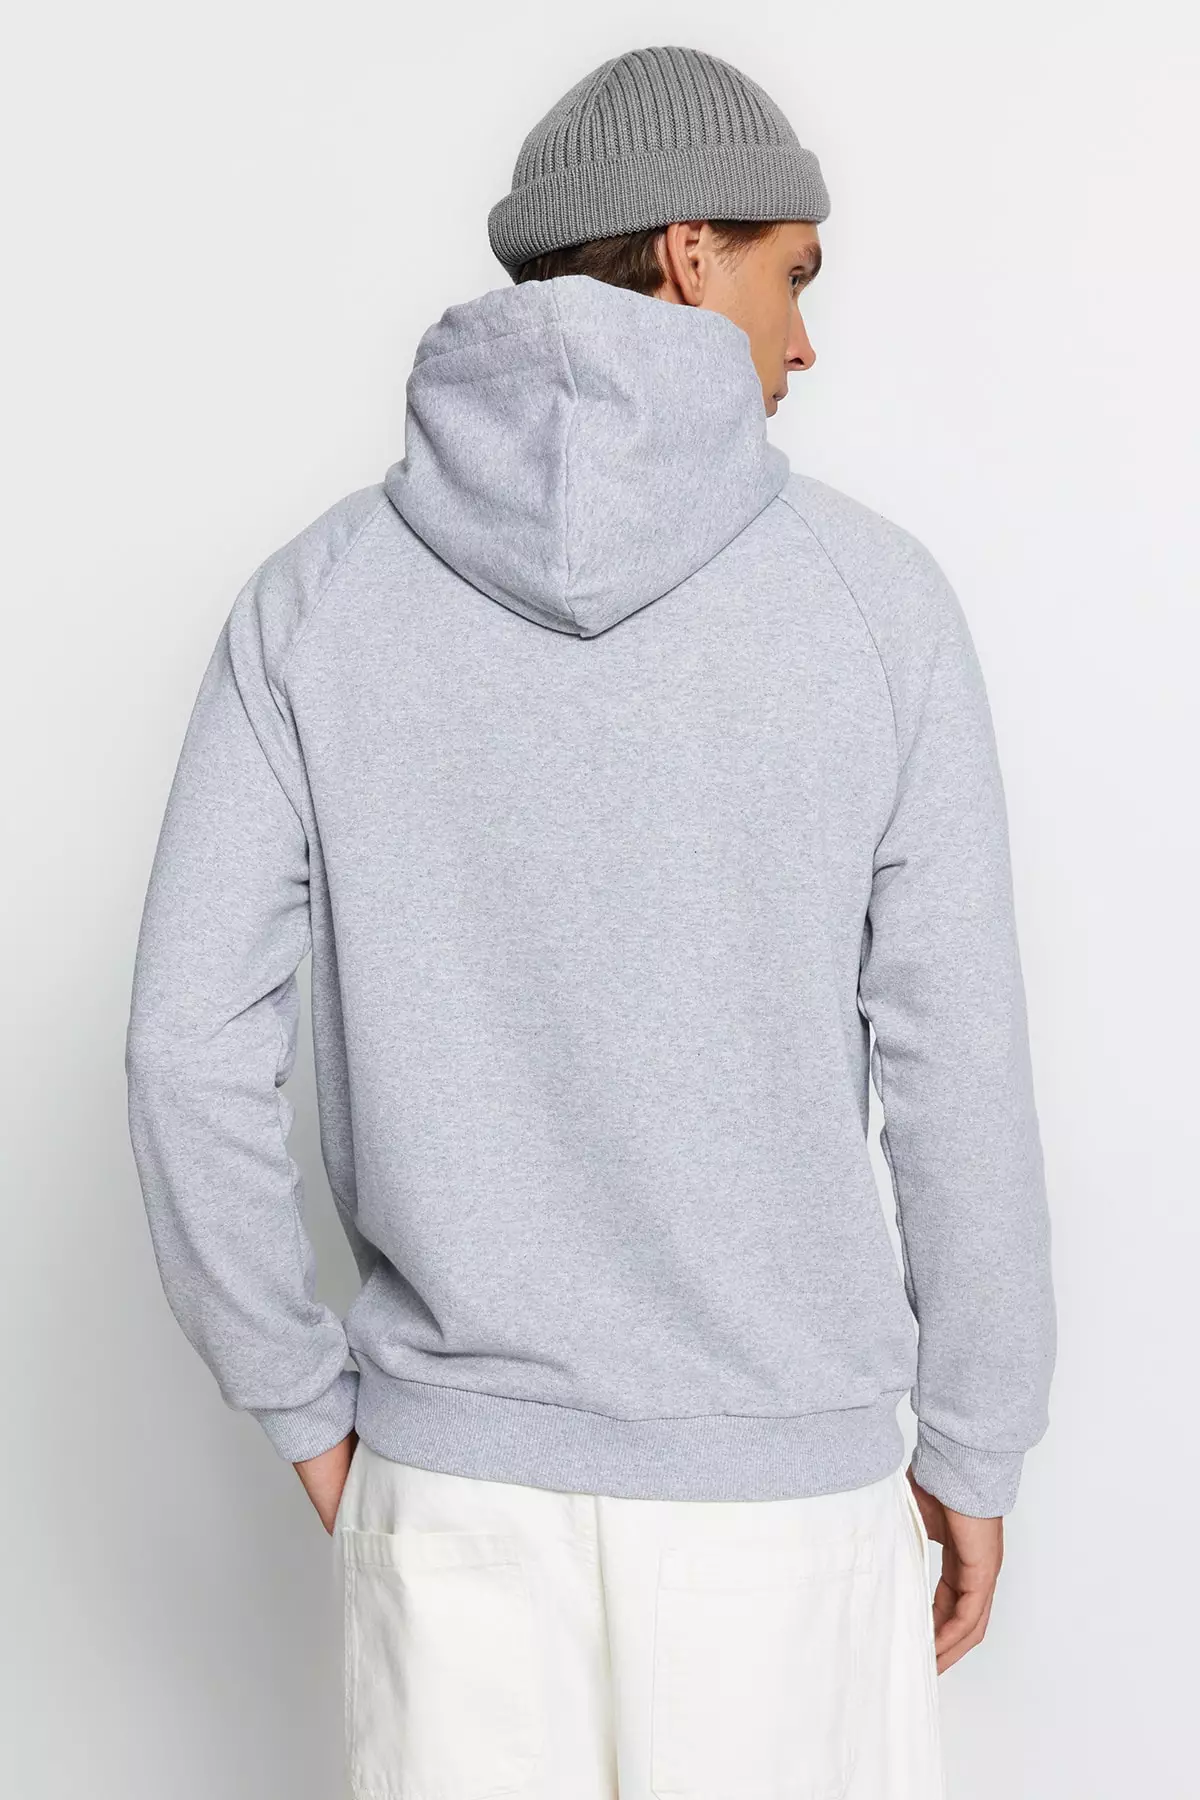 Nike Sportswear Club Fleece Hoodie Men's Sweatshirt - Trendyol